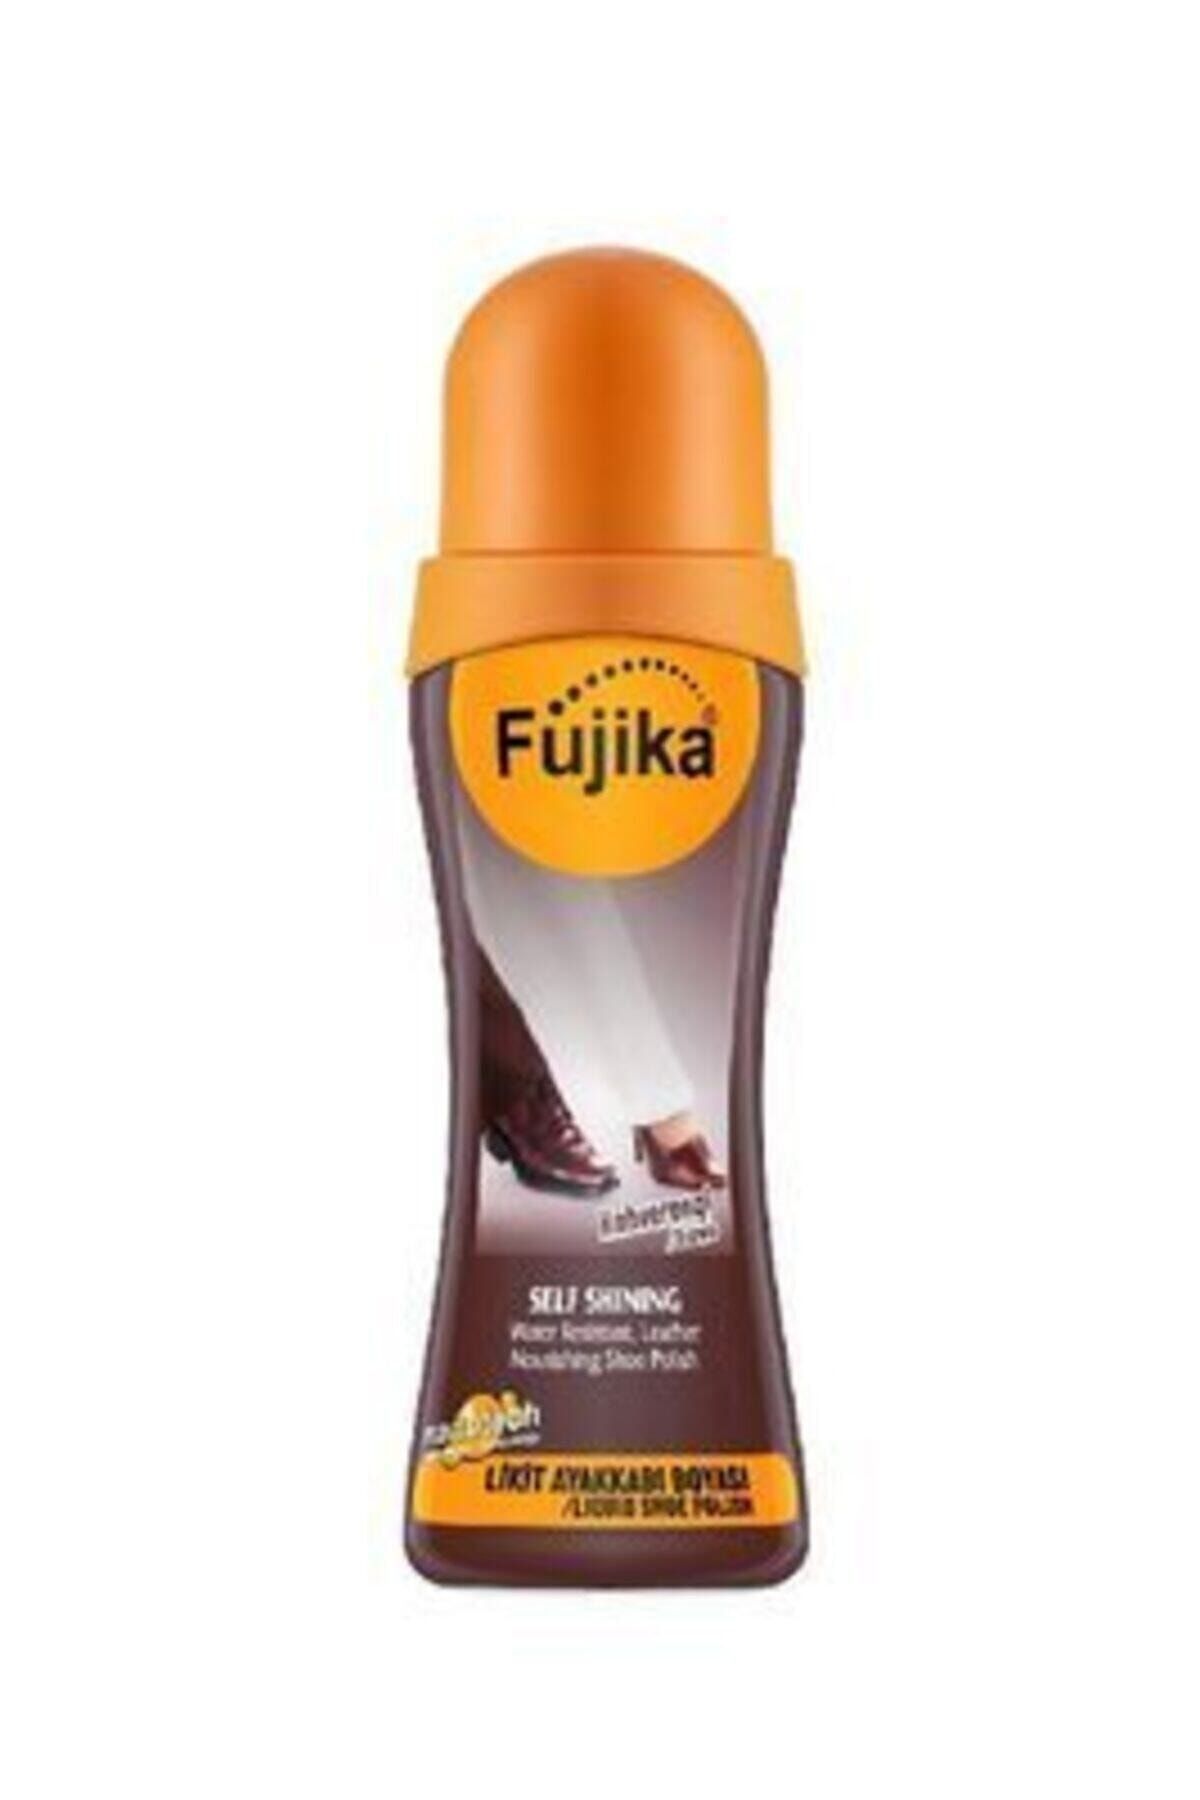 Fujika Kahverengi Likit Ayakkabı Boyası 75 ml